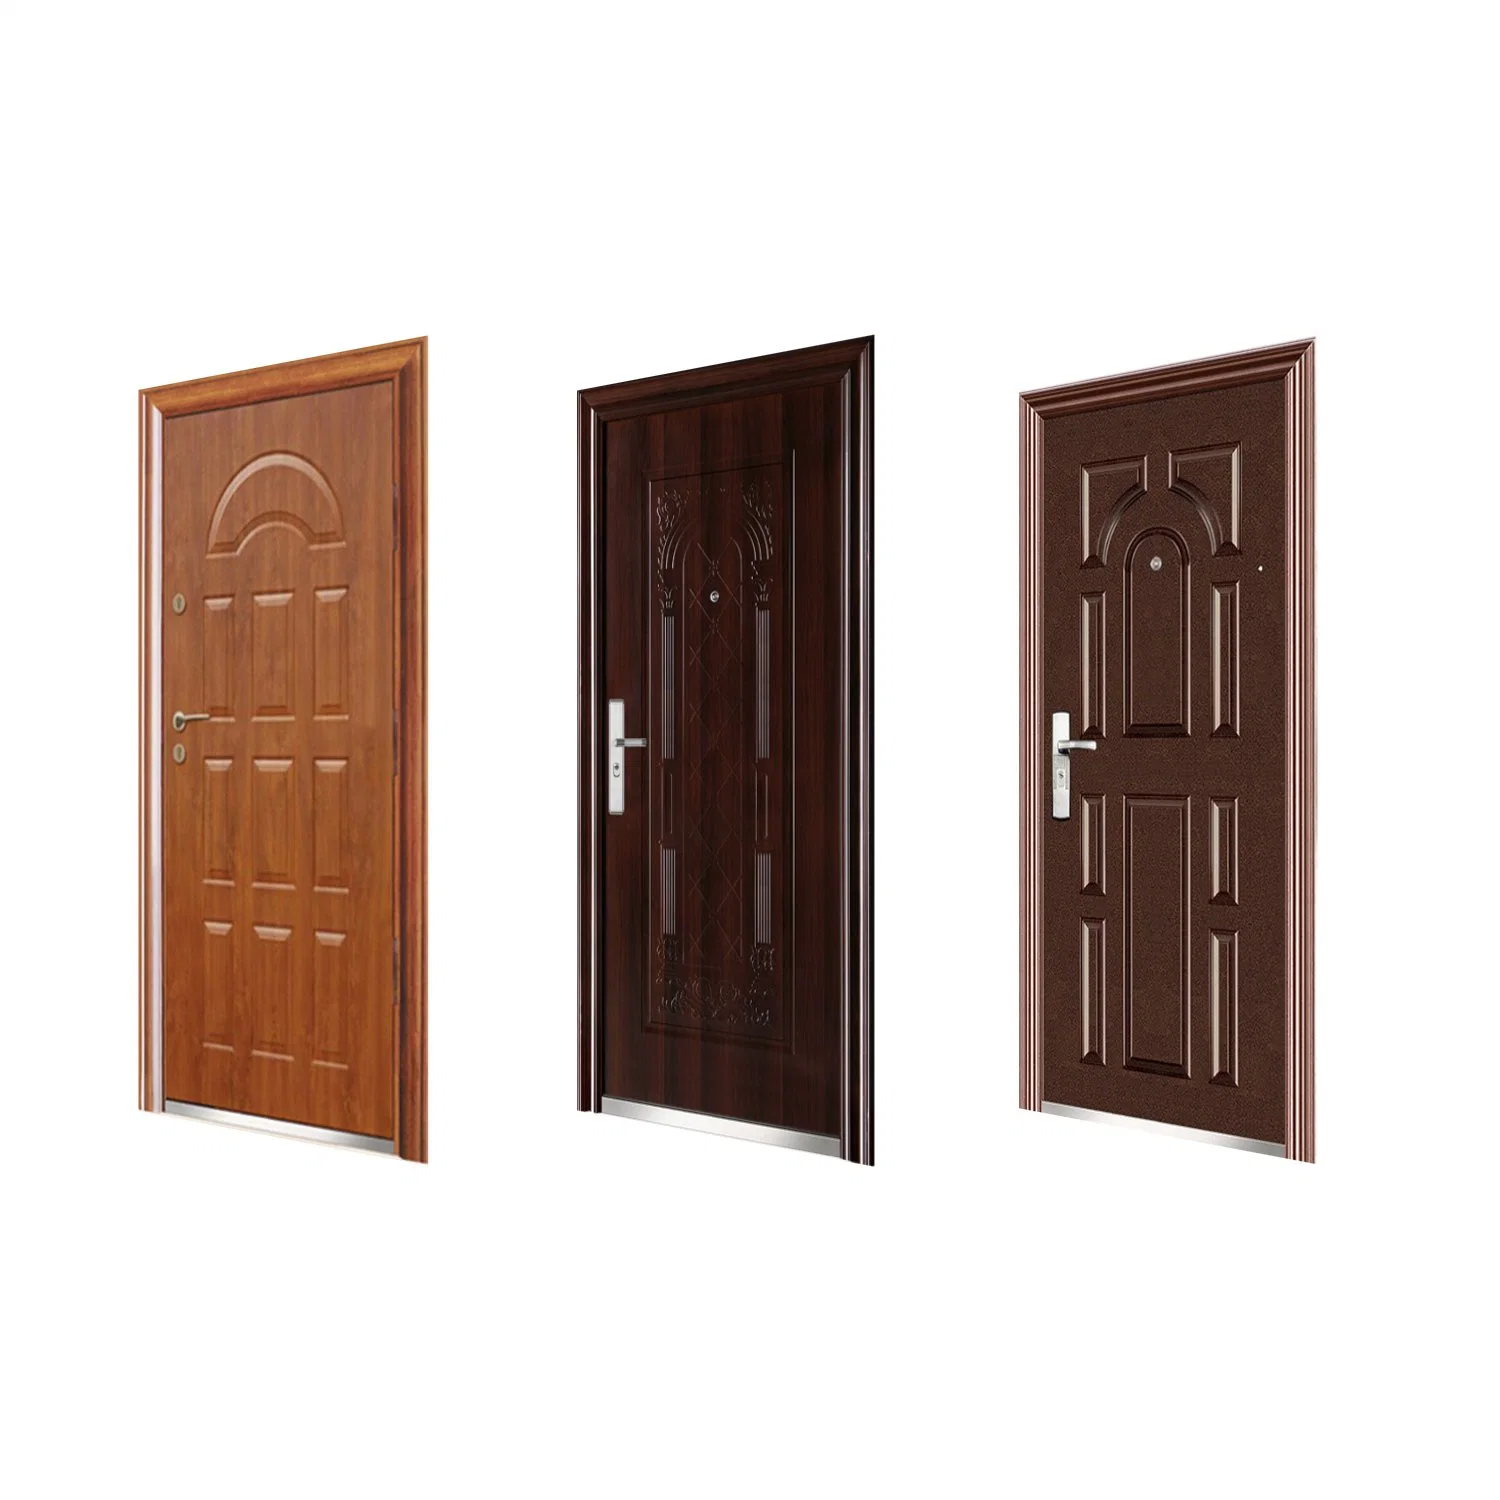 Iron Door Metal Security Steel Wooden Armored Door for Home Gate